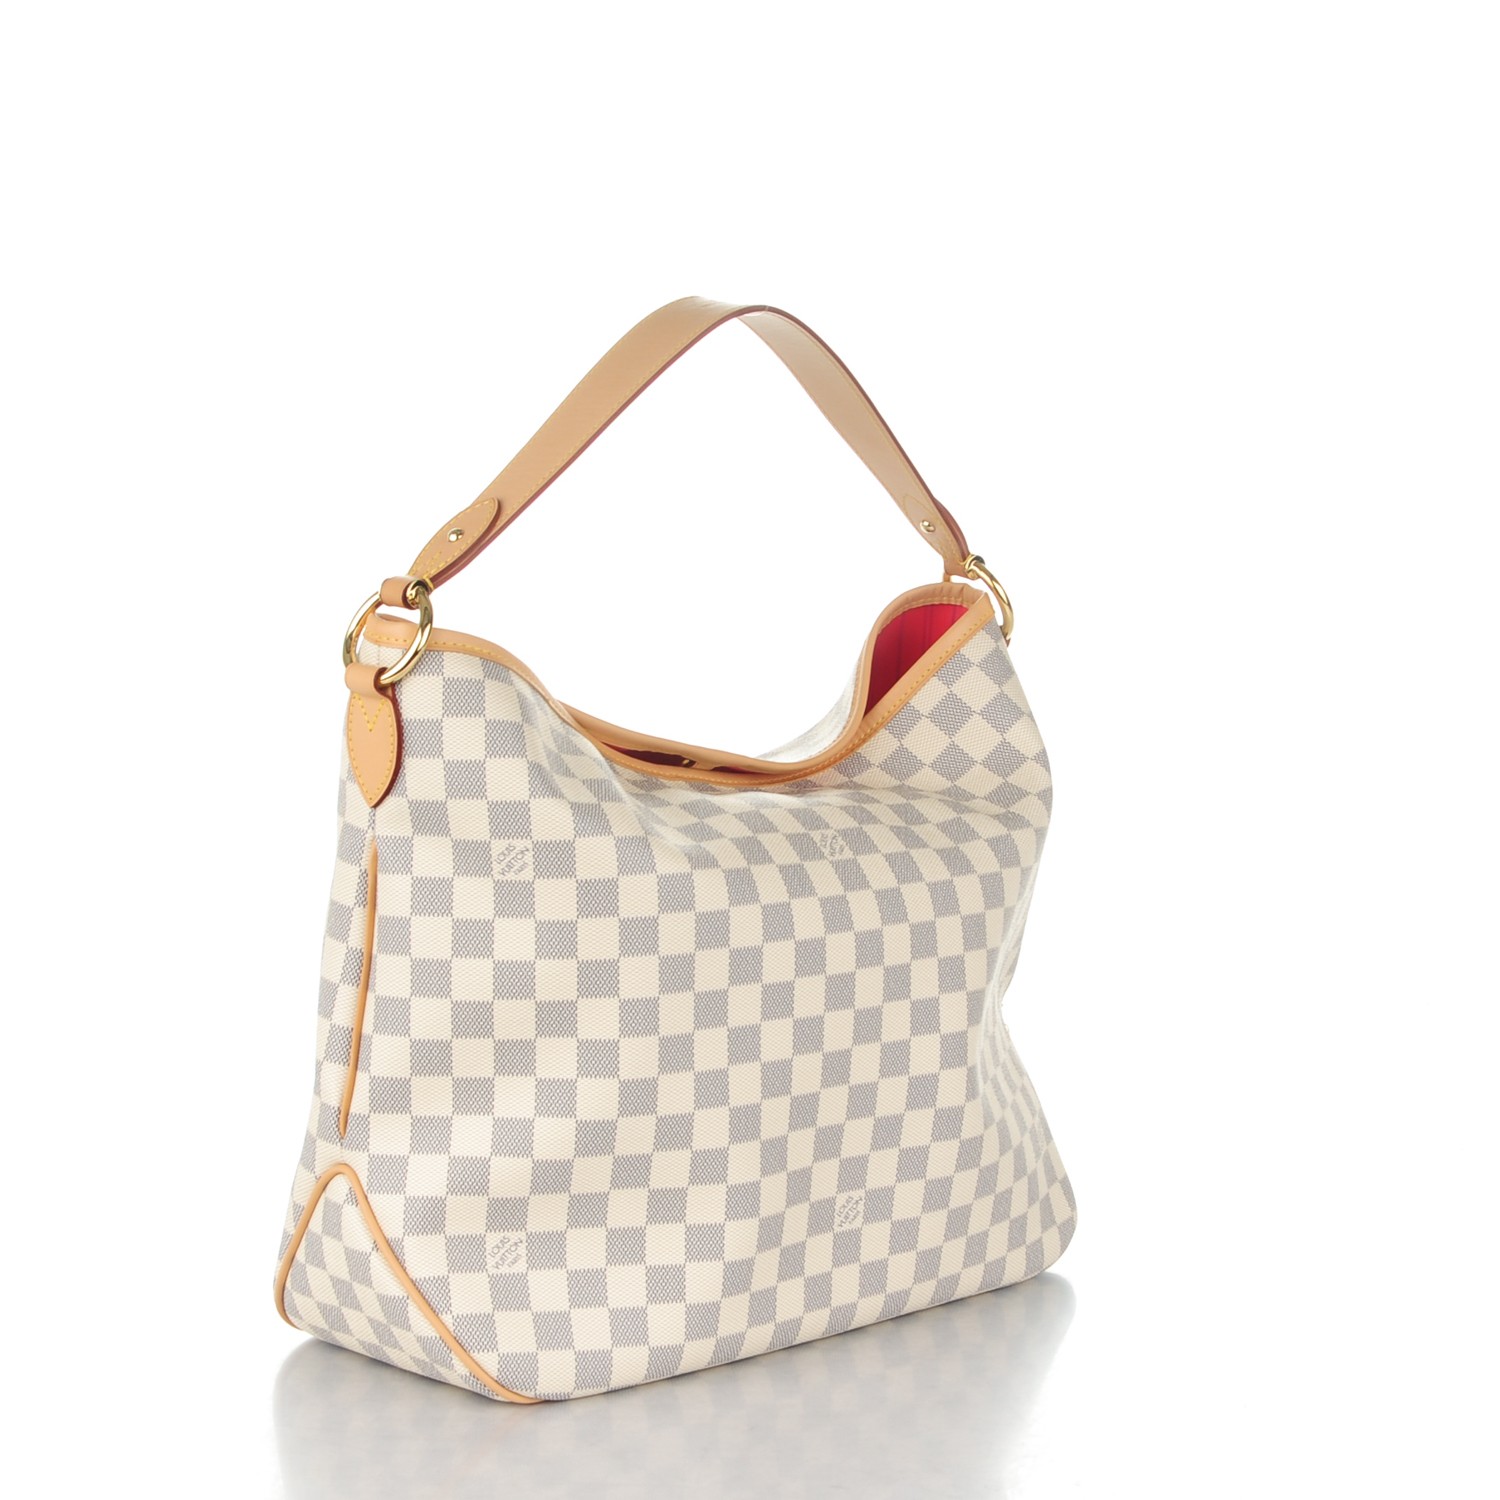 Louis Vuitton Delightful Damier Azur Handbag Purse Review and what